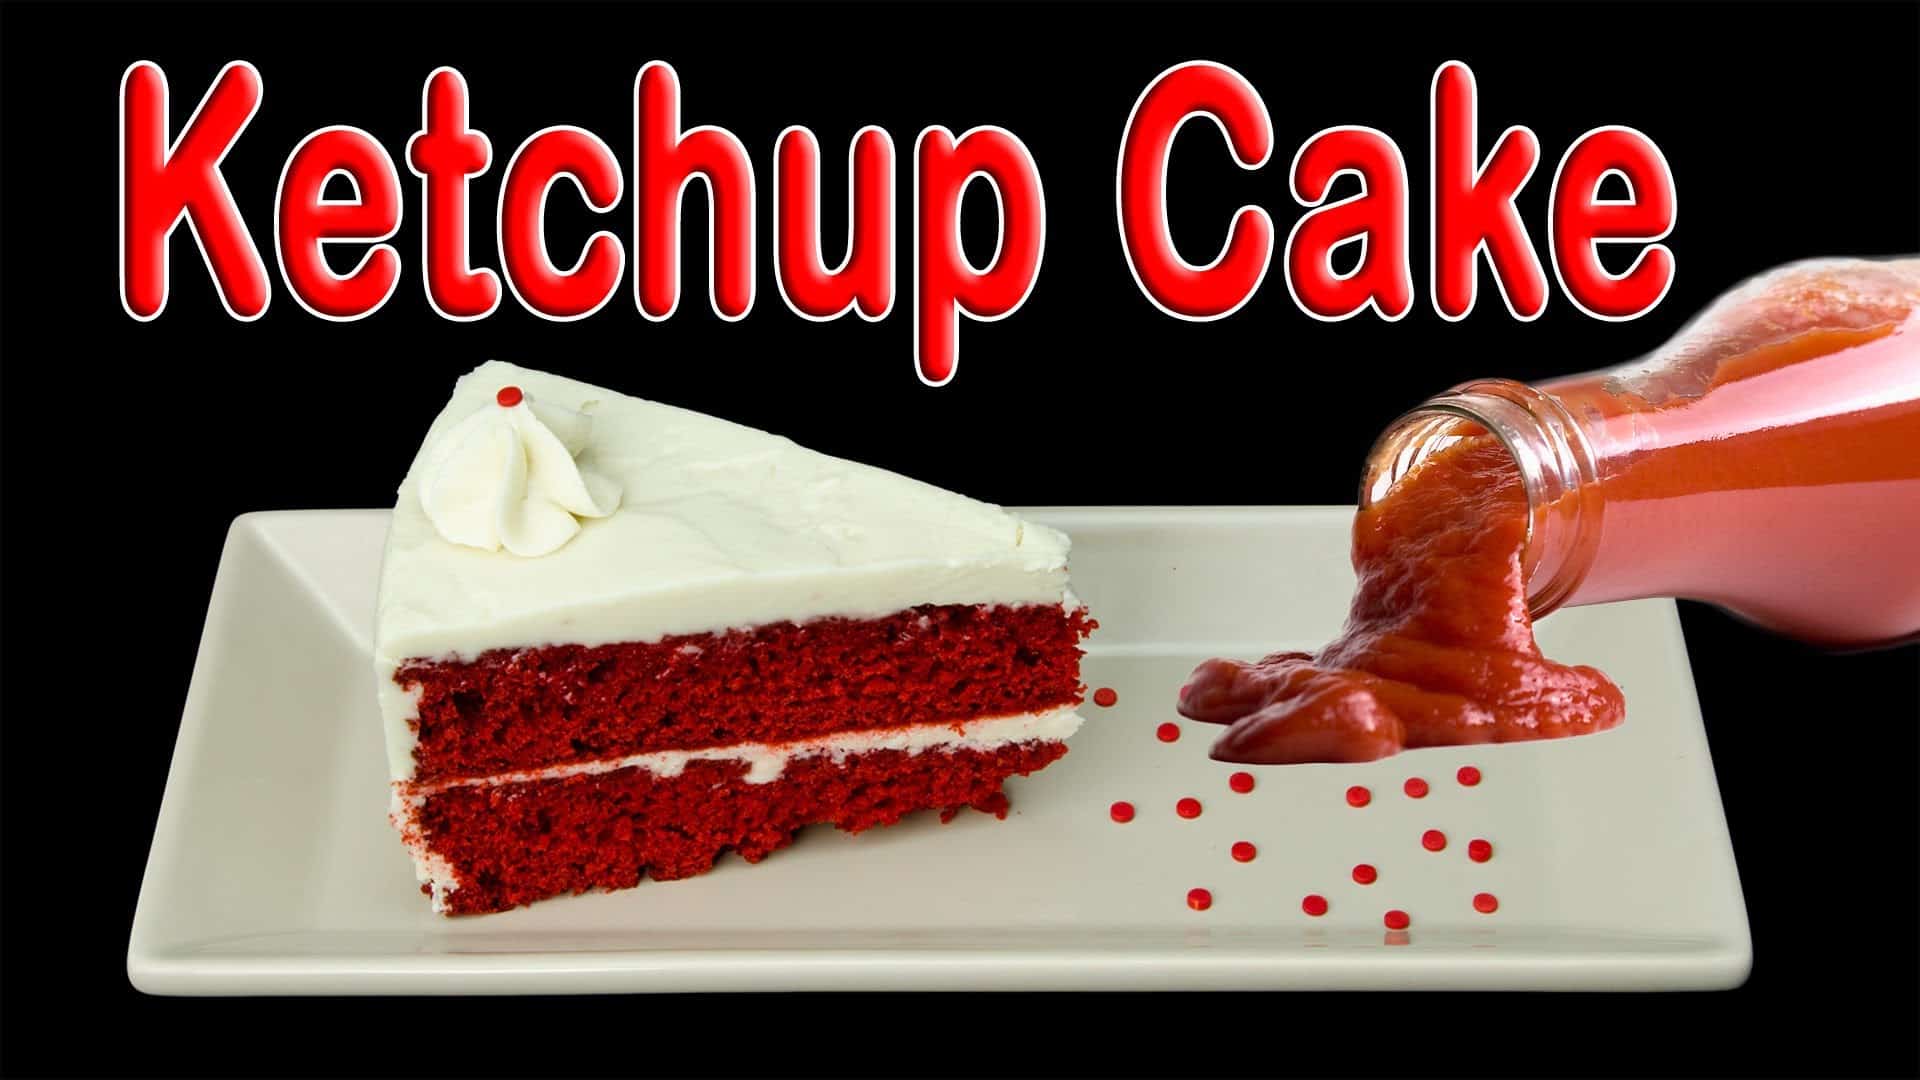 Ketchup cake